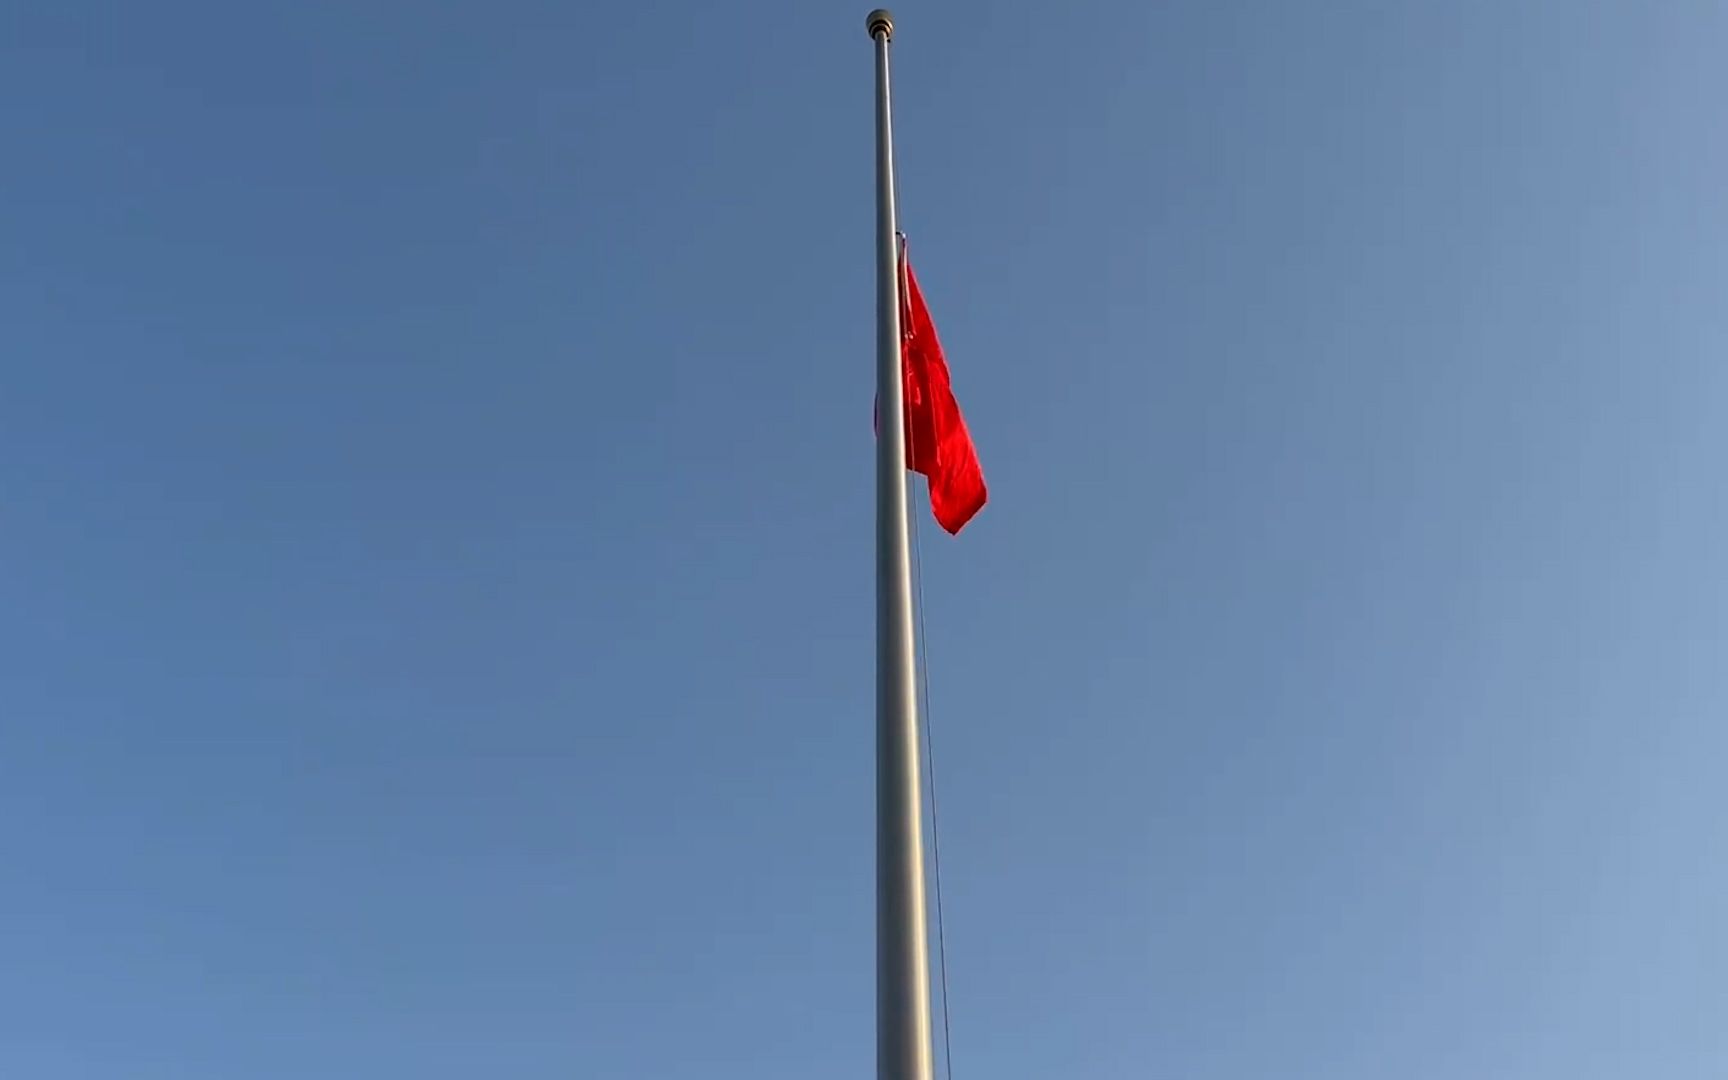 侵华日军南京大屠杀遇难同胞纪念馆举行升旗仪式并下半旗志哀